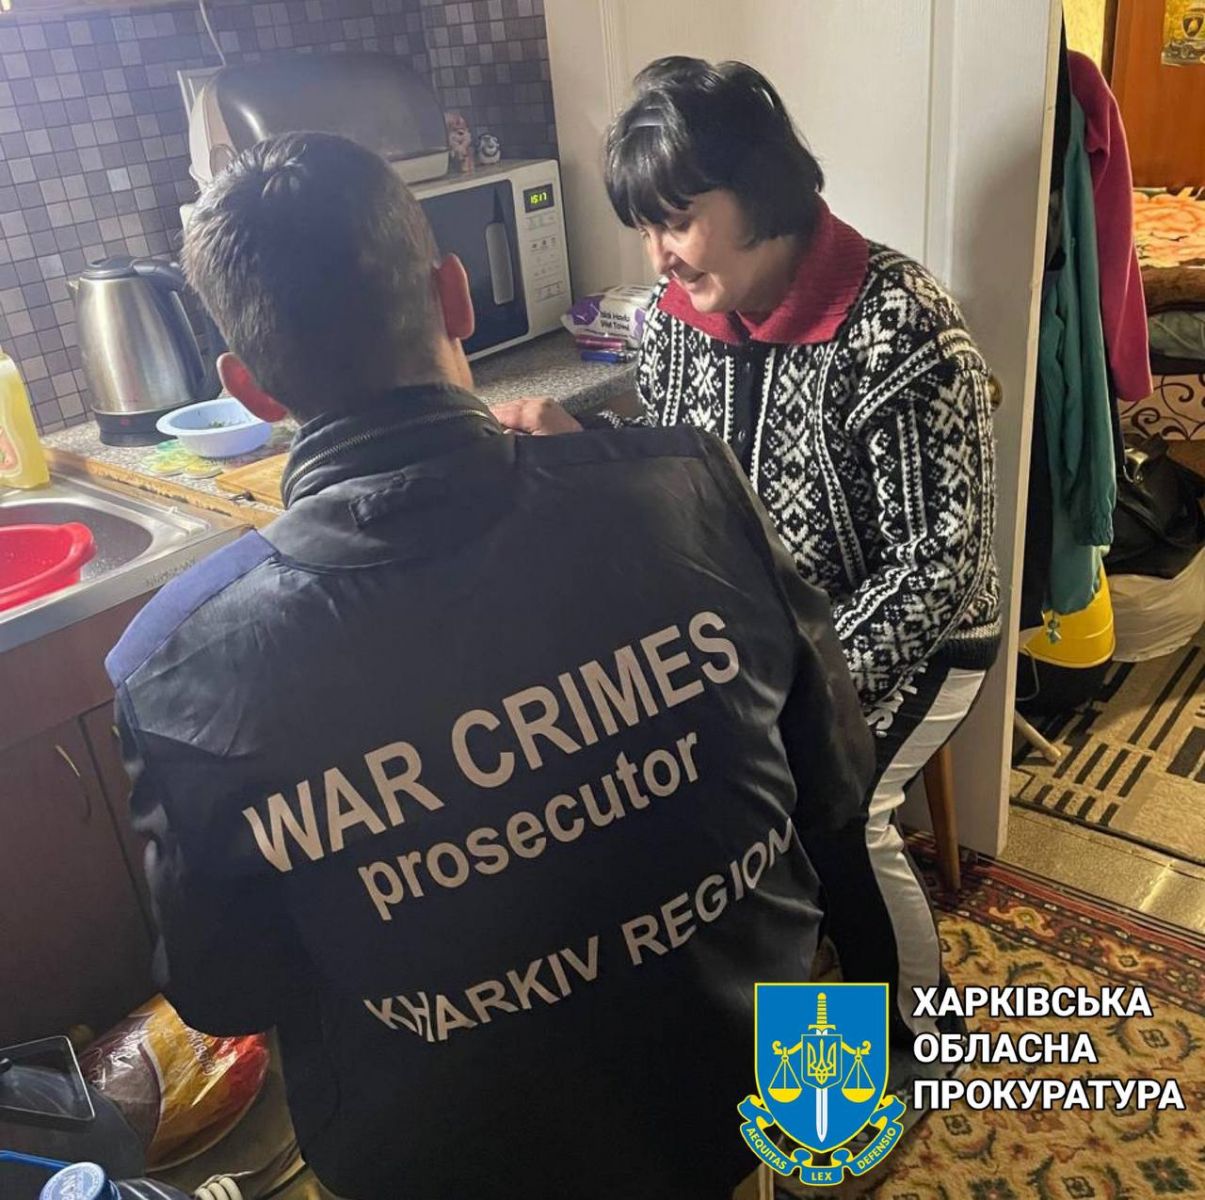 Обстрел общежития в Харькове: идет сбор доказательств военных преступлений рф